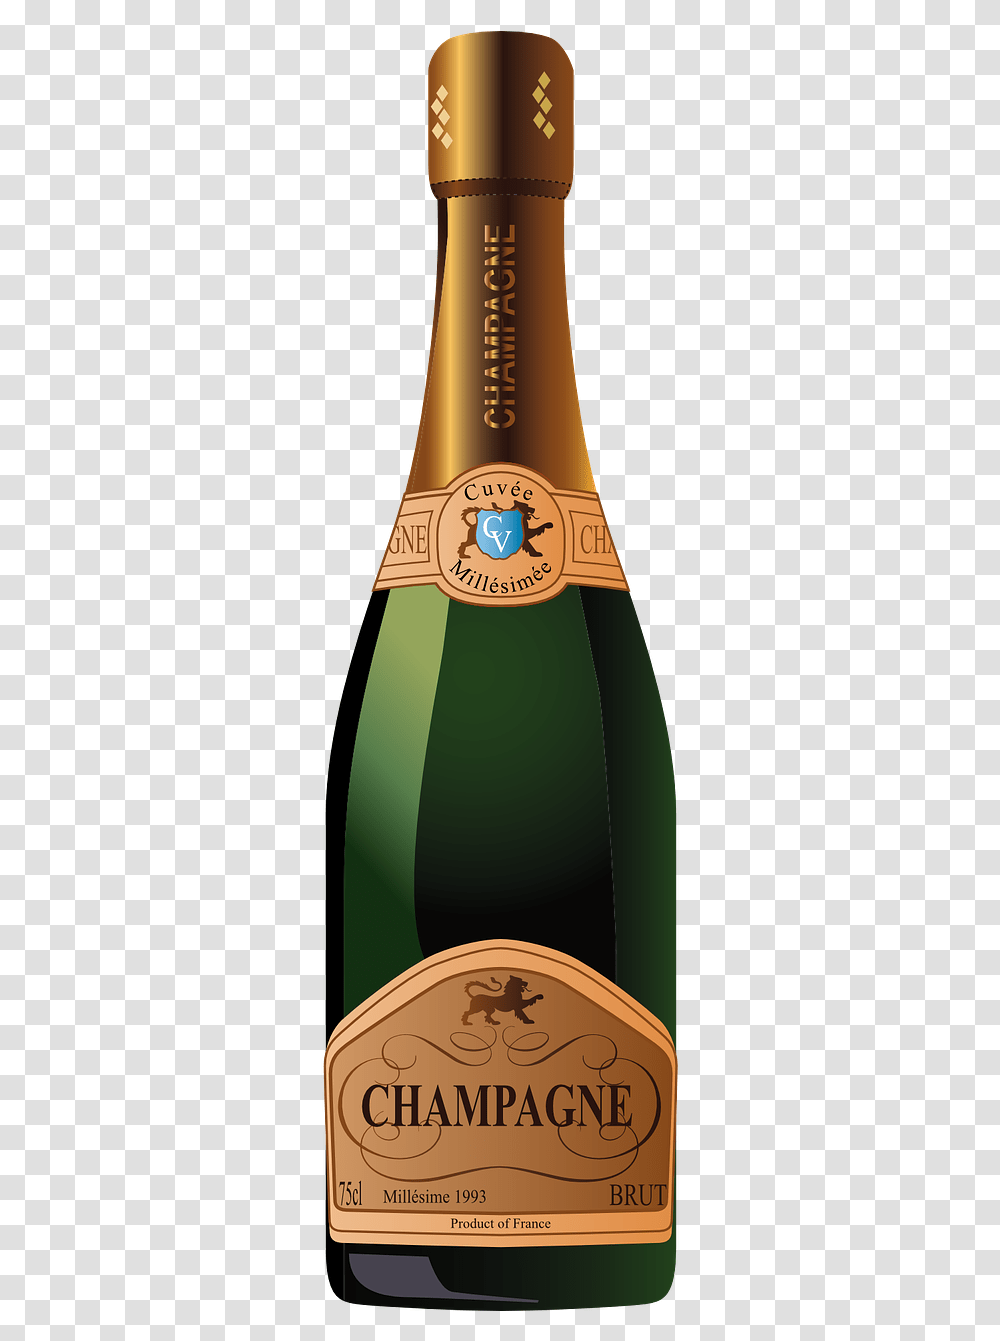 Champagne Bottle Mockup Psd Free, Label, Alcohol, Beverage Transparent Png